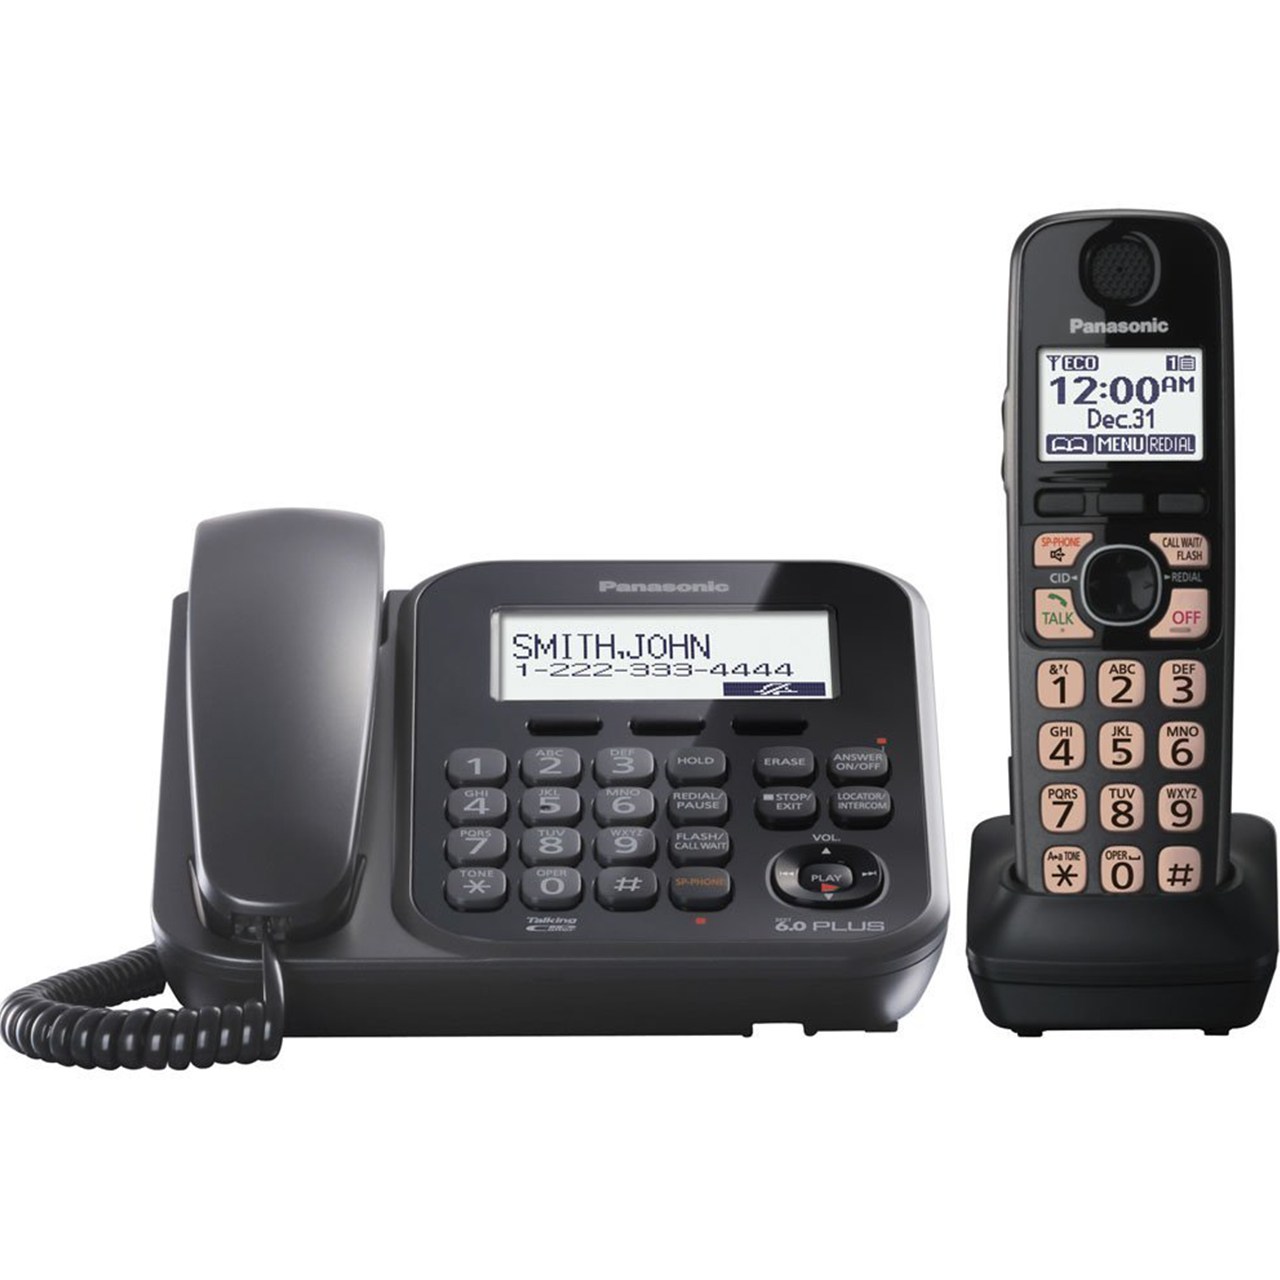 تلفن بی سیم پاناسونیک مدل KX-TG4771